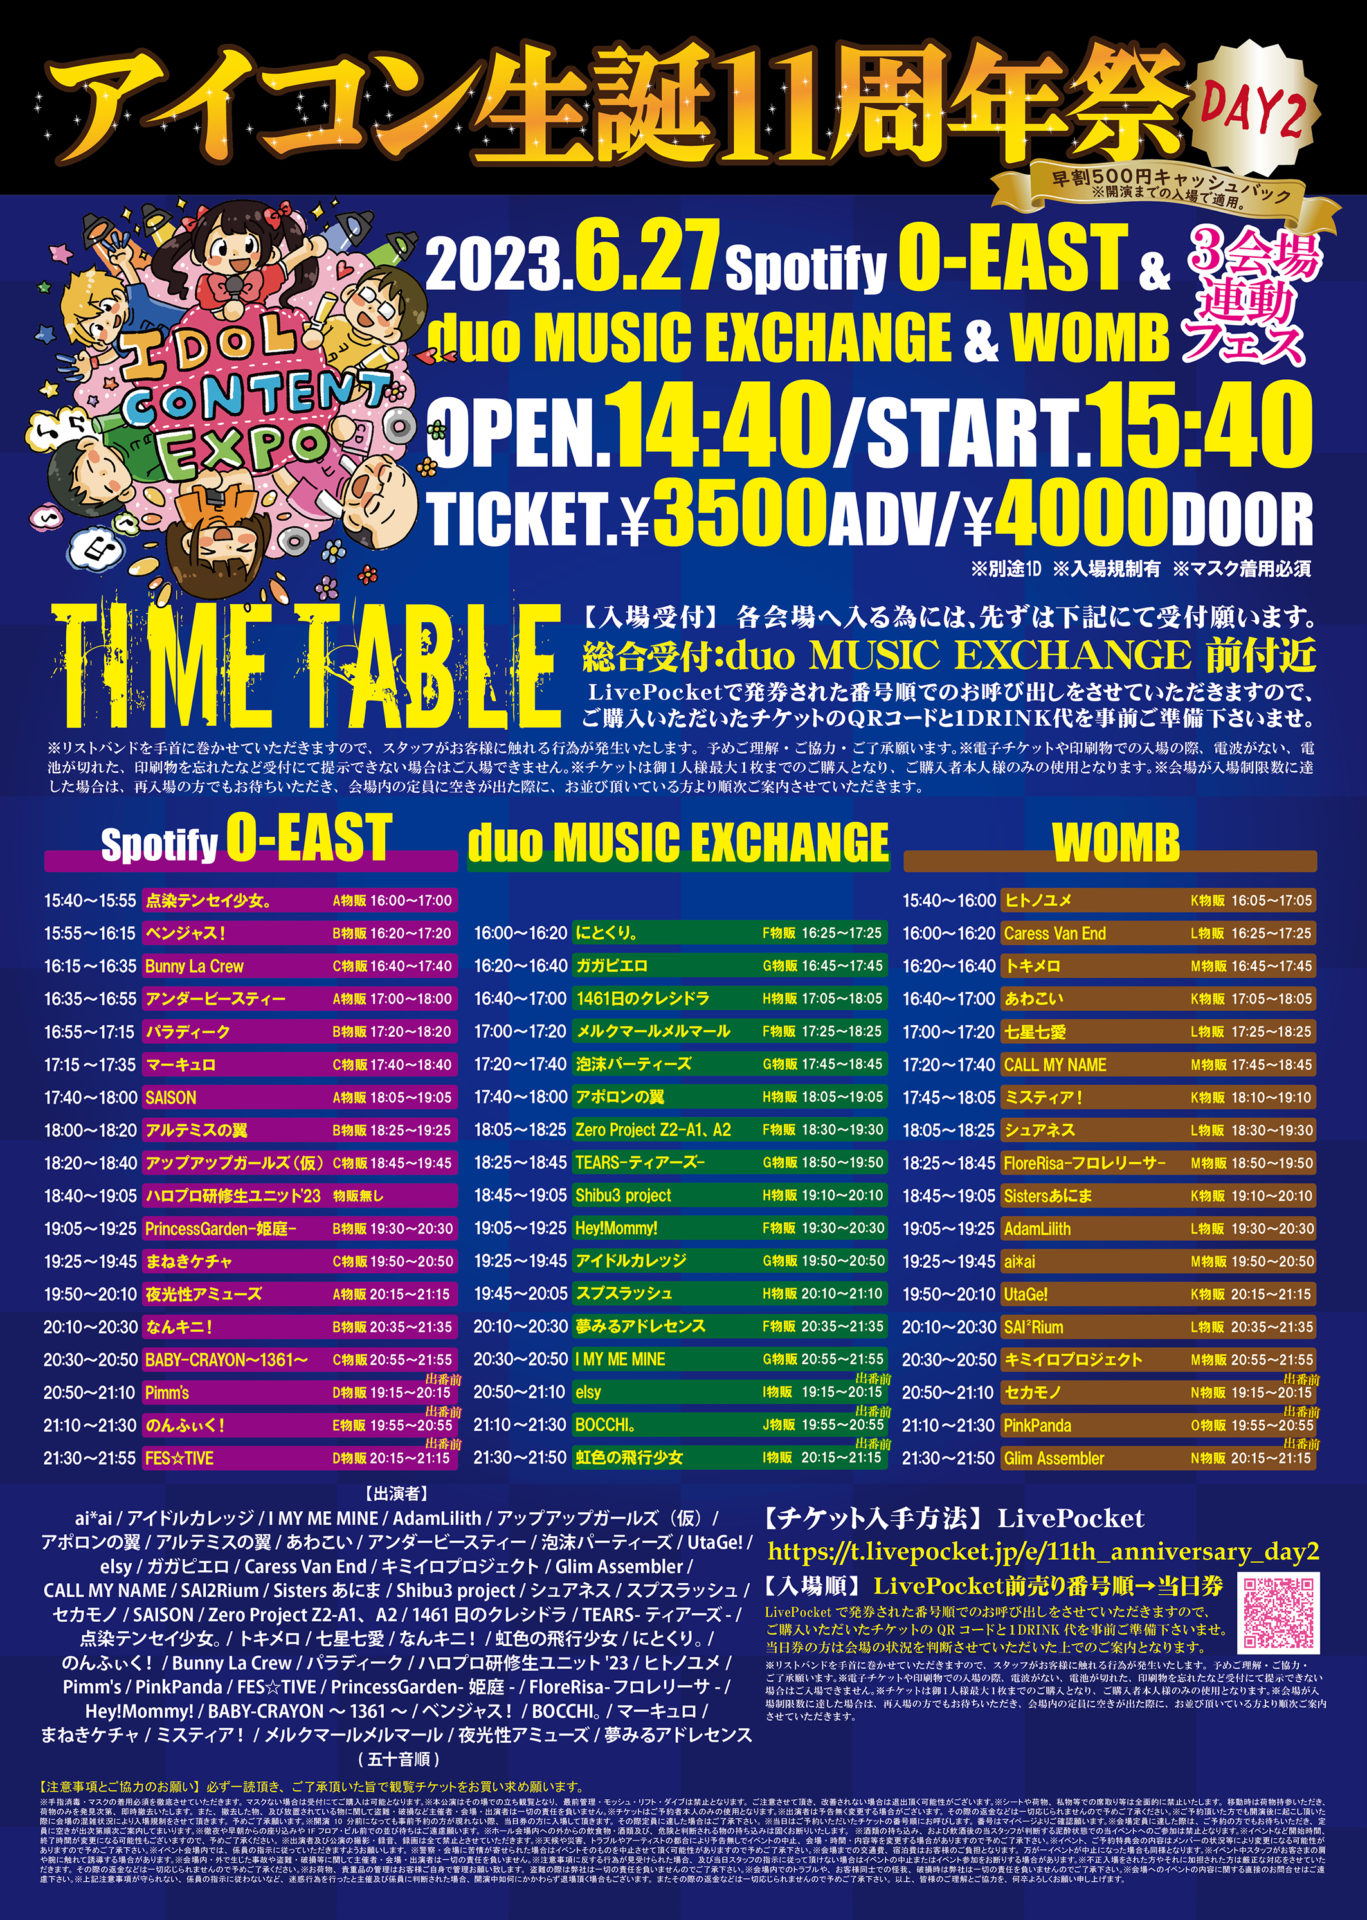 IDOL CONTENT EXPO アイコン生誕11周年祭～DAY2～